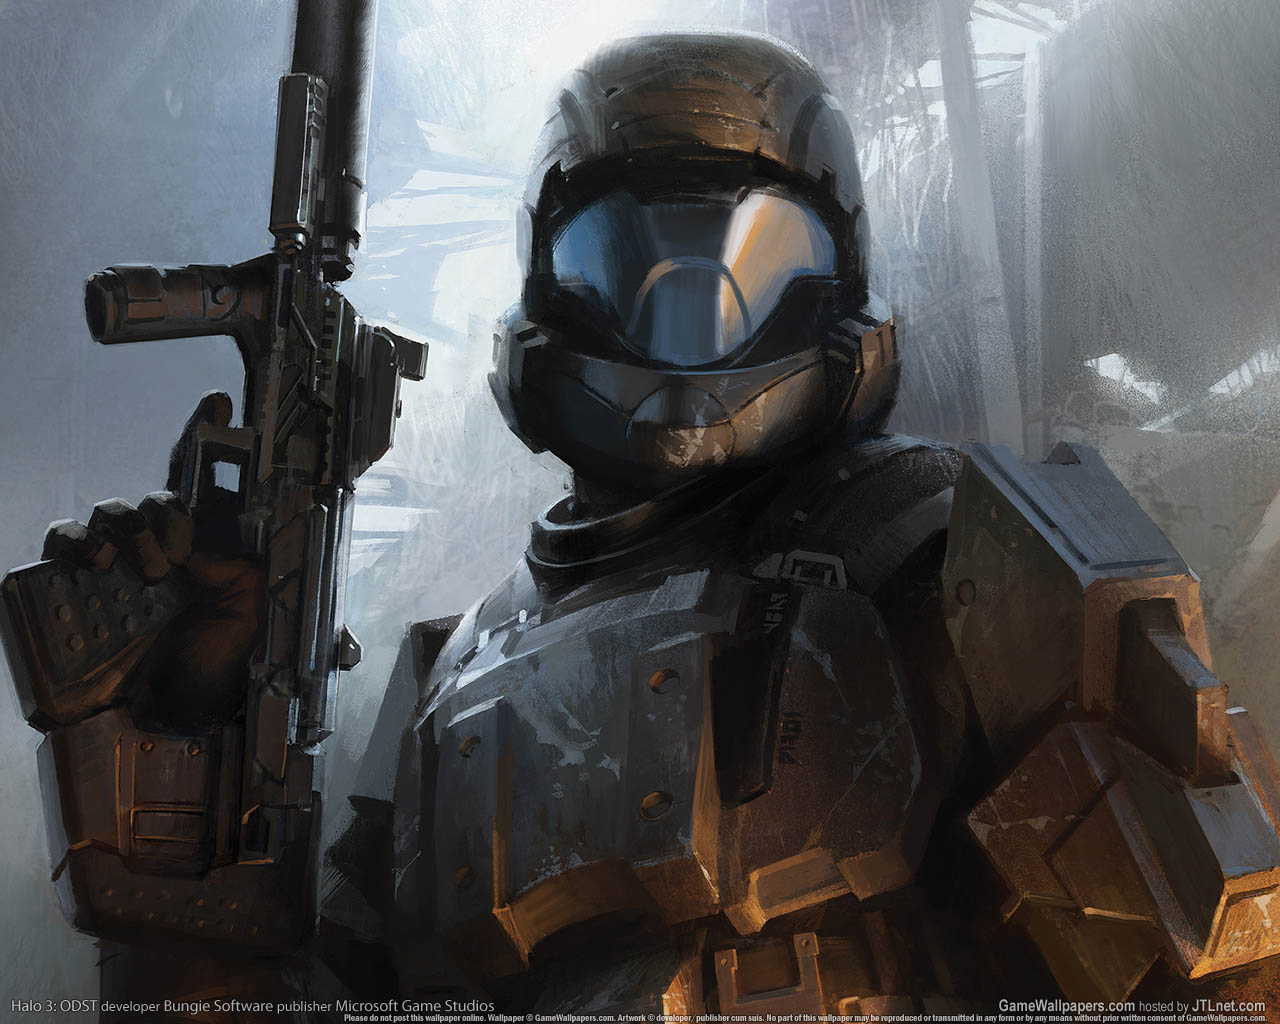 Halo 3: ODST fond d'cran 01 1280x1024